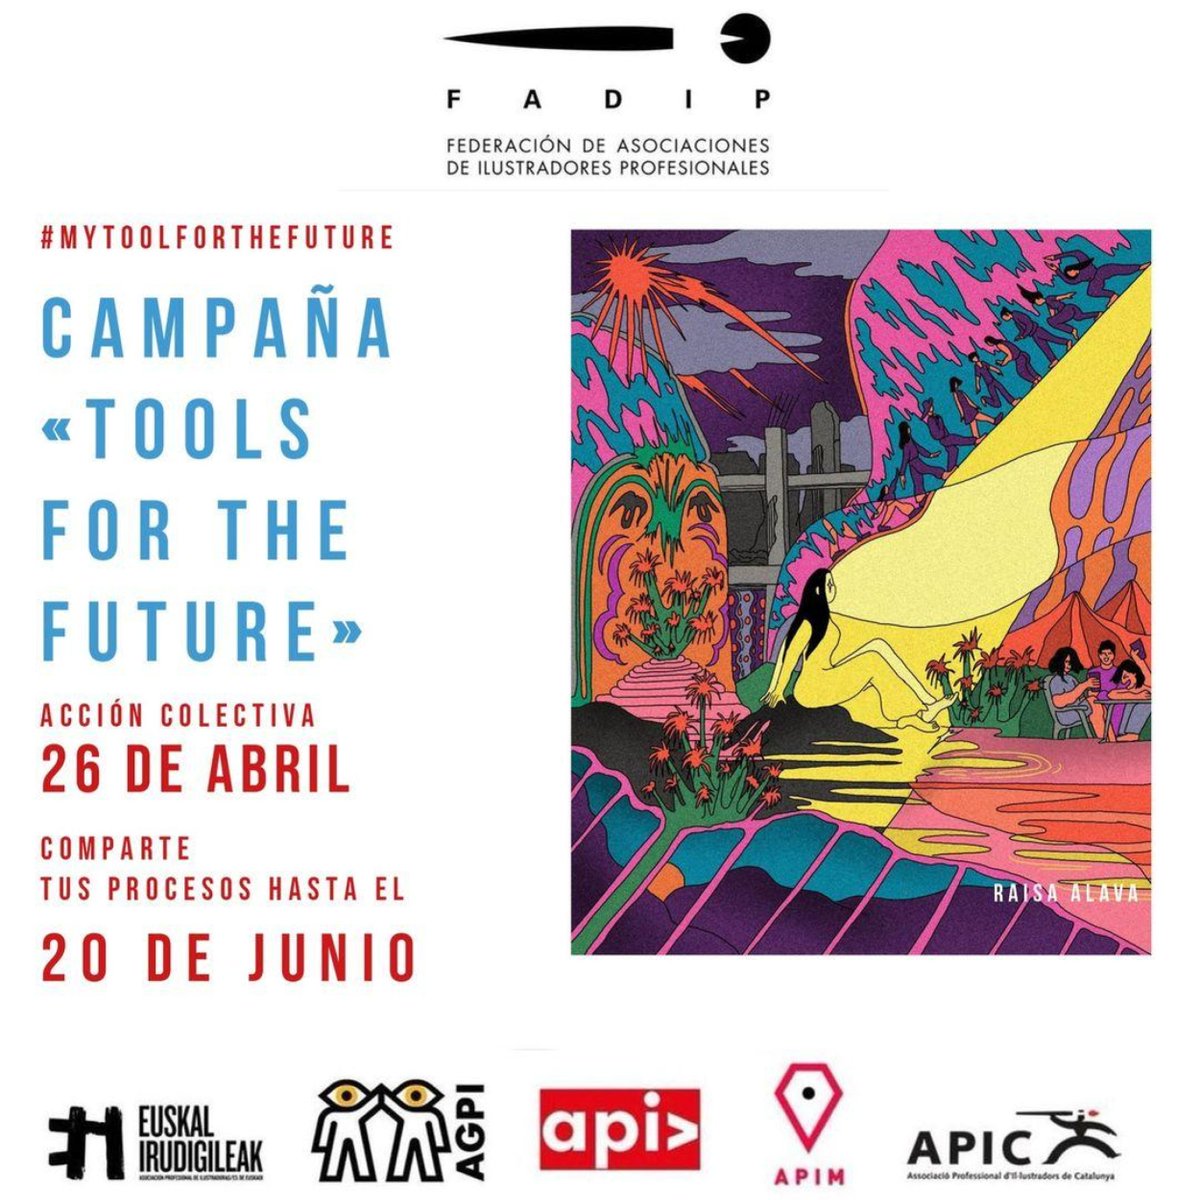 ATENCIÓN! 🔥 FADIP presentó durante la Feria de Bolonia la campaña: «MY TOOL FOR THE FUTURE. Tus procesos creativos son la verdadera herramienta creativa de futuro» y se lanza una ACCIÓN COLECTIVA para este 26 de Abril, Día Mundial de la Propiedad Intelectual 🧵👇